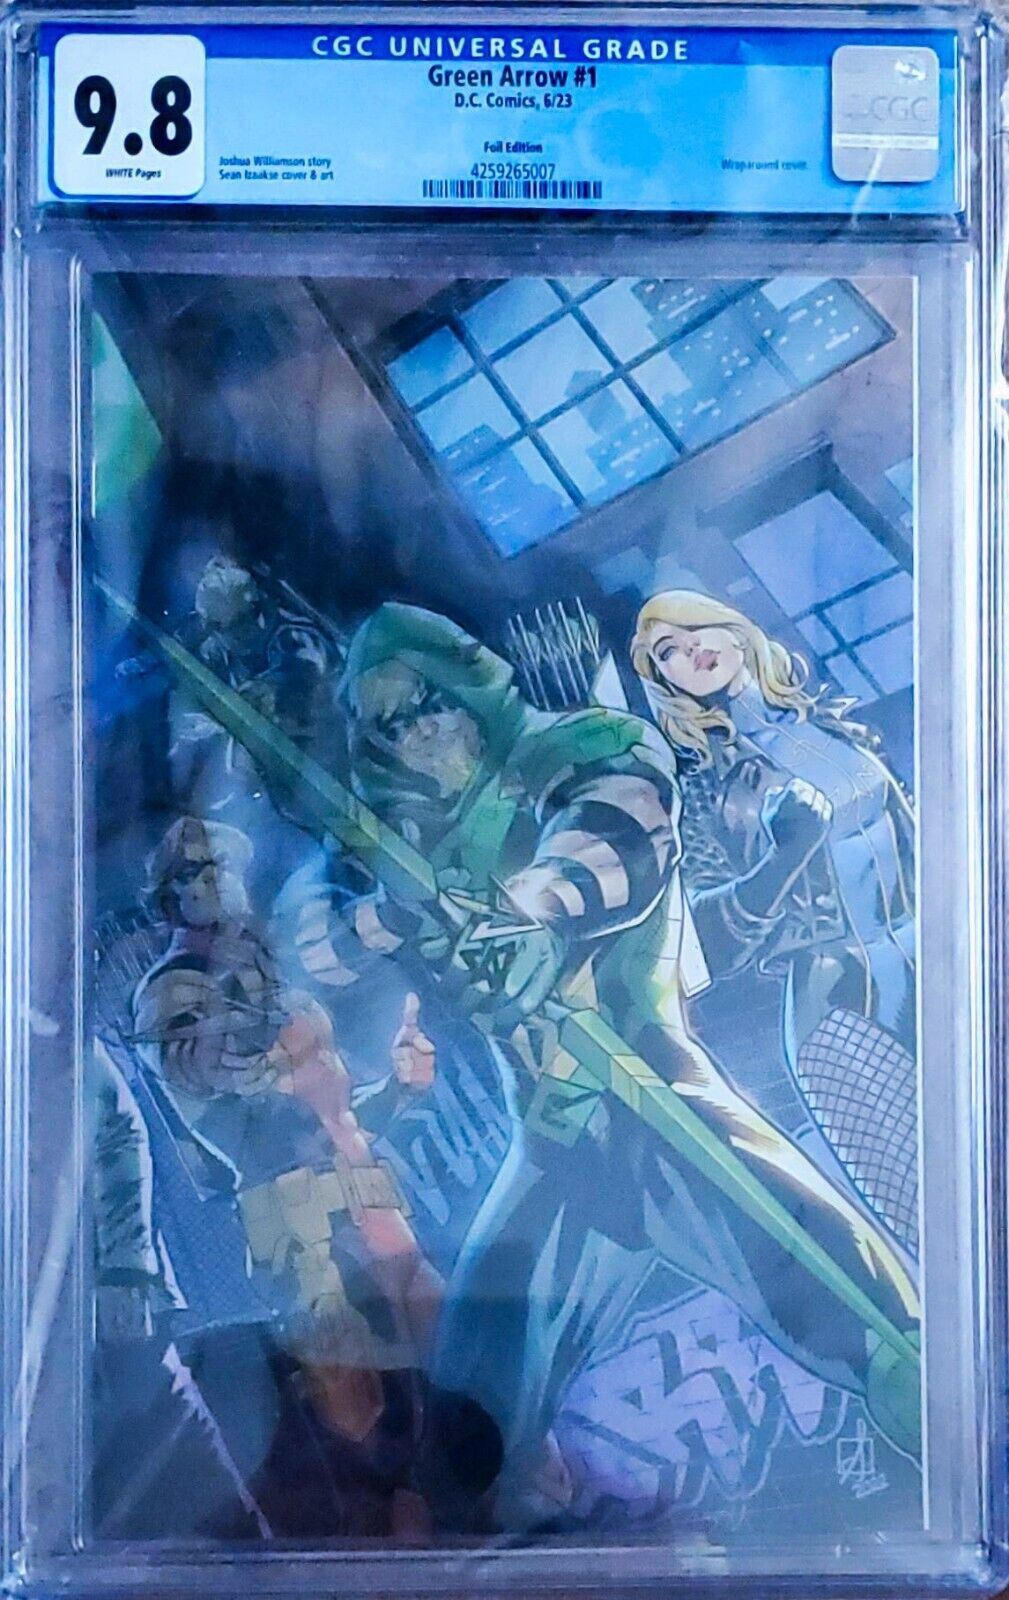 Green Arrow #1 (DC Comics June 2023) Foil Edition CGC 9.8